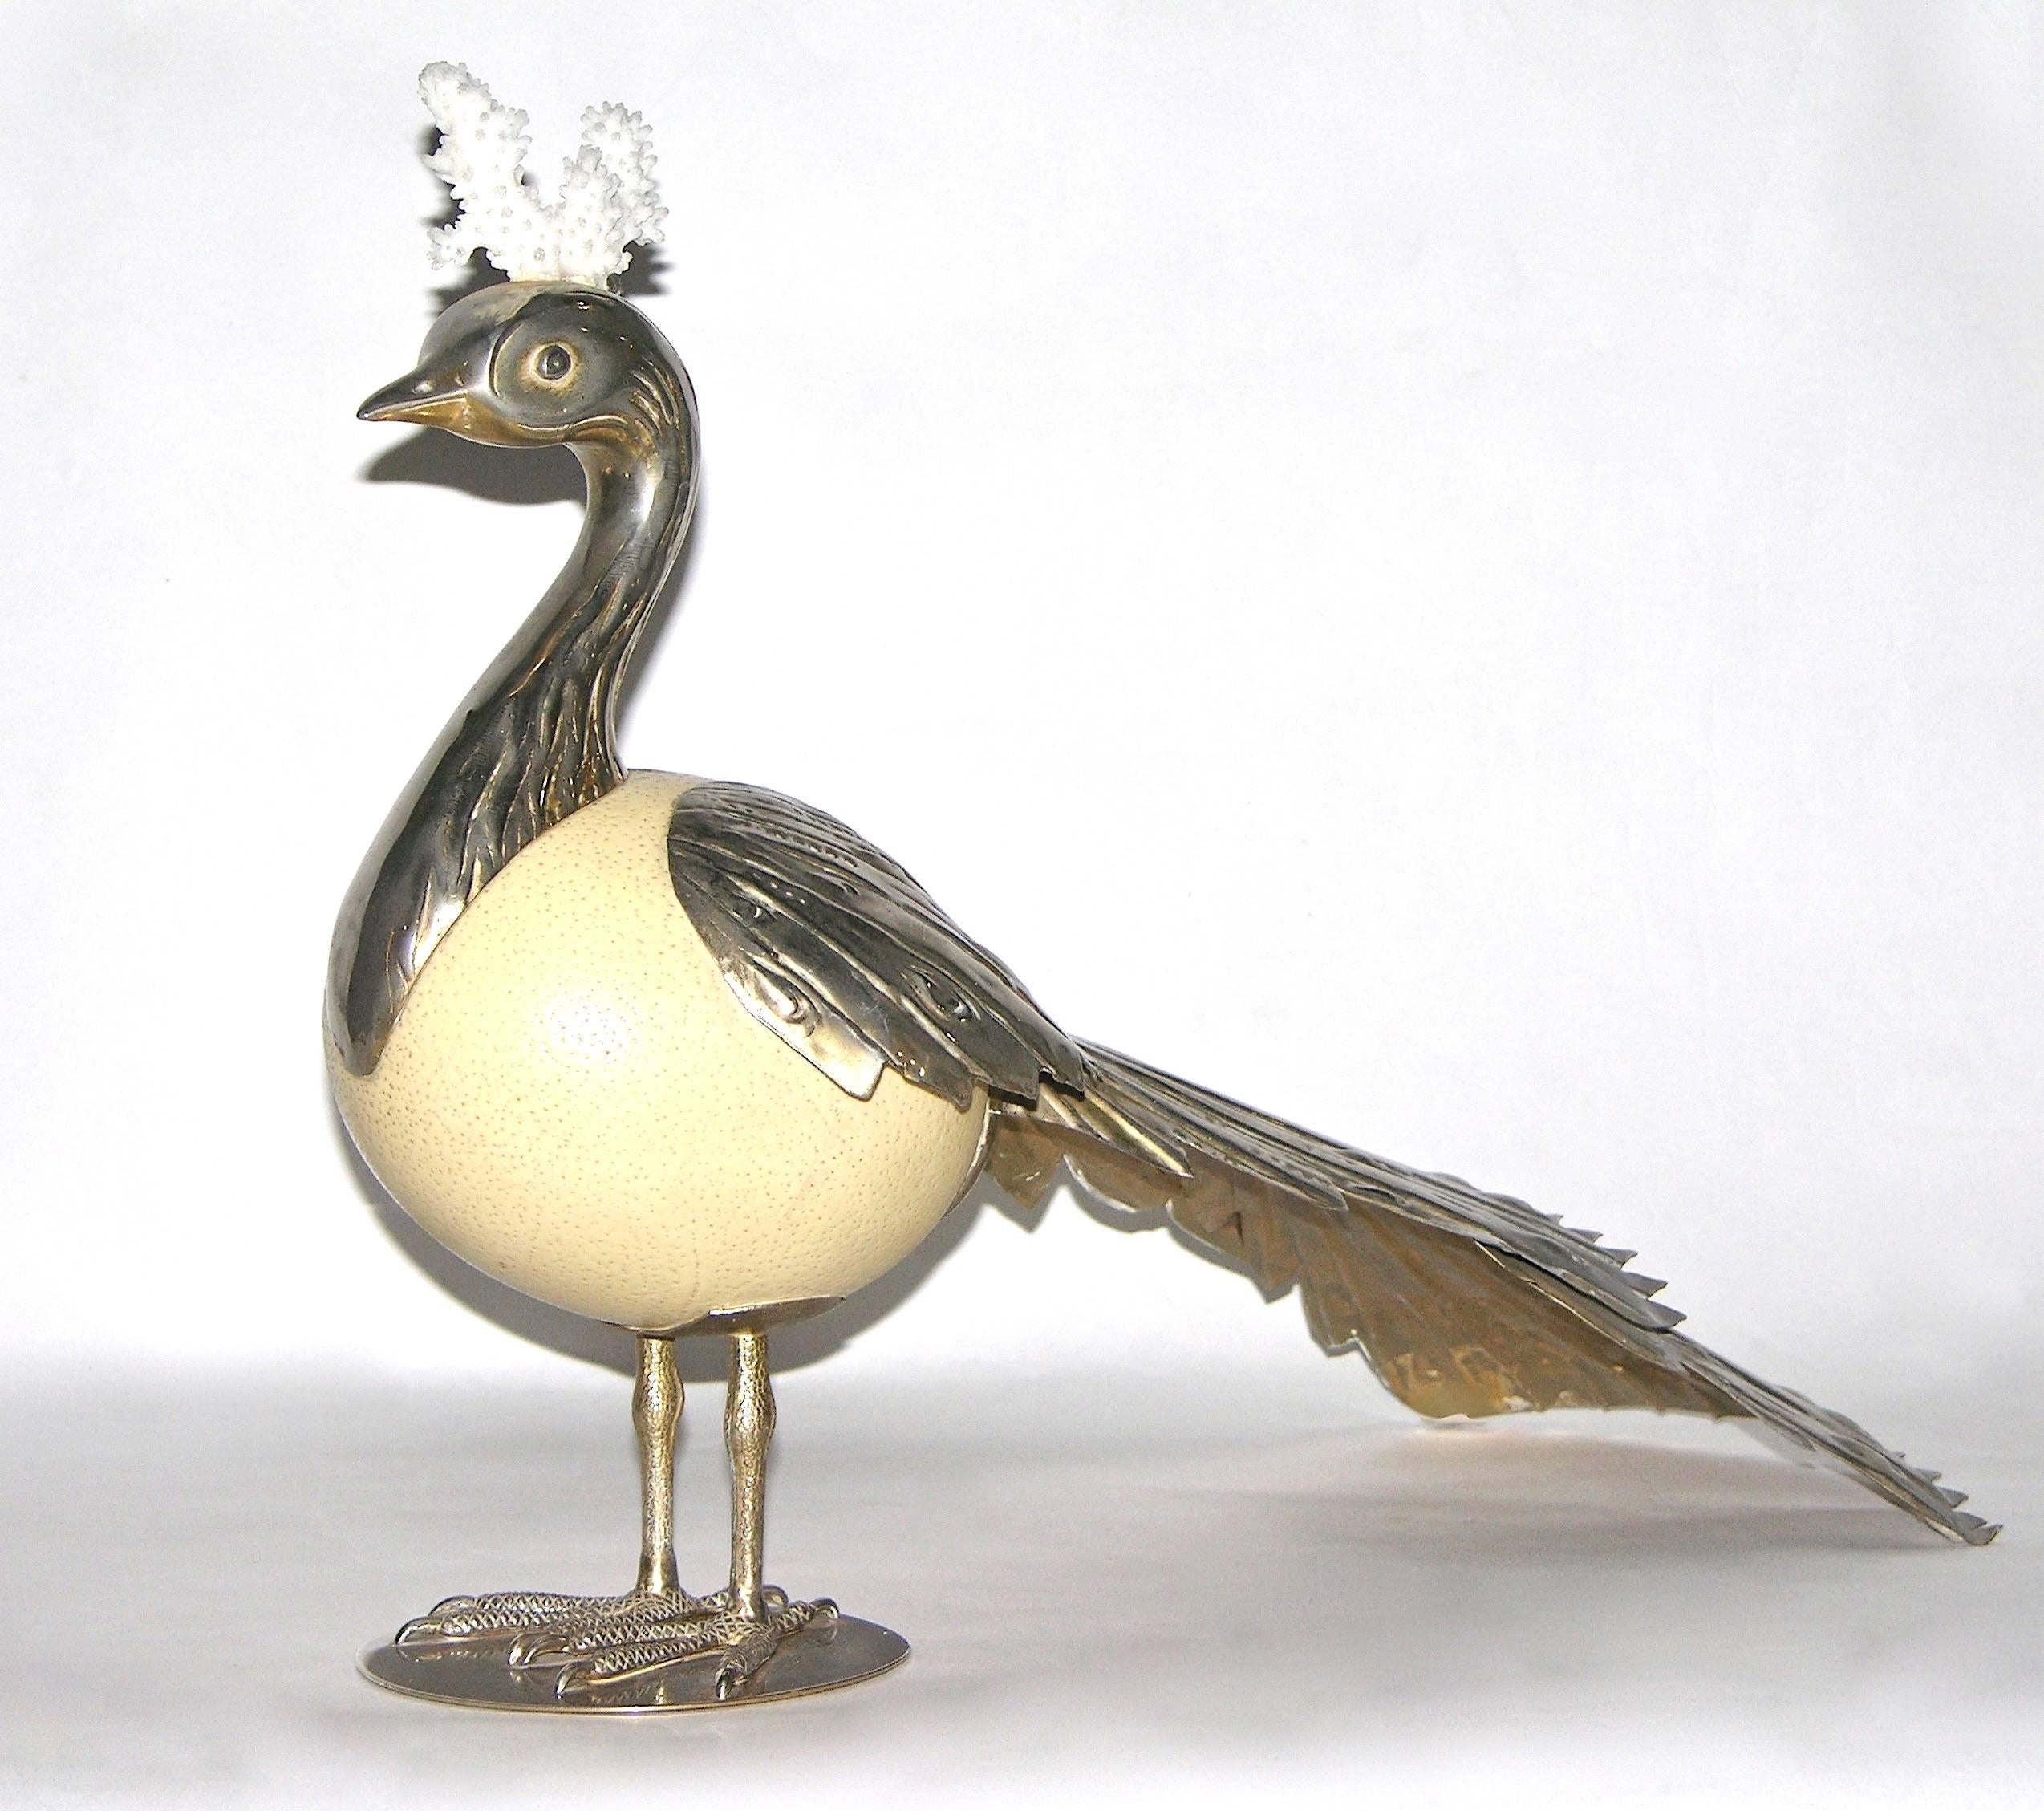 Esta obra de arte italiana única en su género, un pájaro escultórico de Antonio Pavia, es un raro objeto de gran valor coleccionable, totalmente artesanal, con un huevo de avestruz como cuerpo, decorado con una impresionante cola de plumas largas